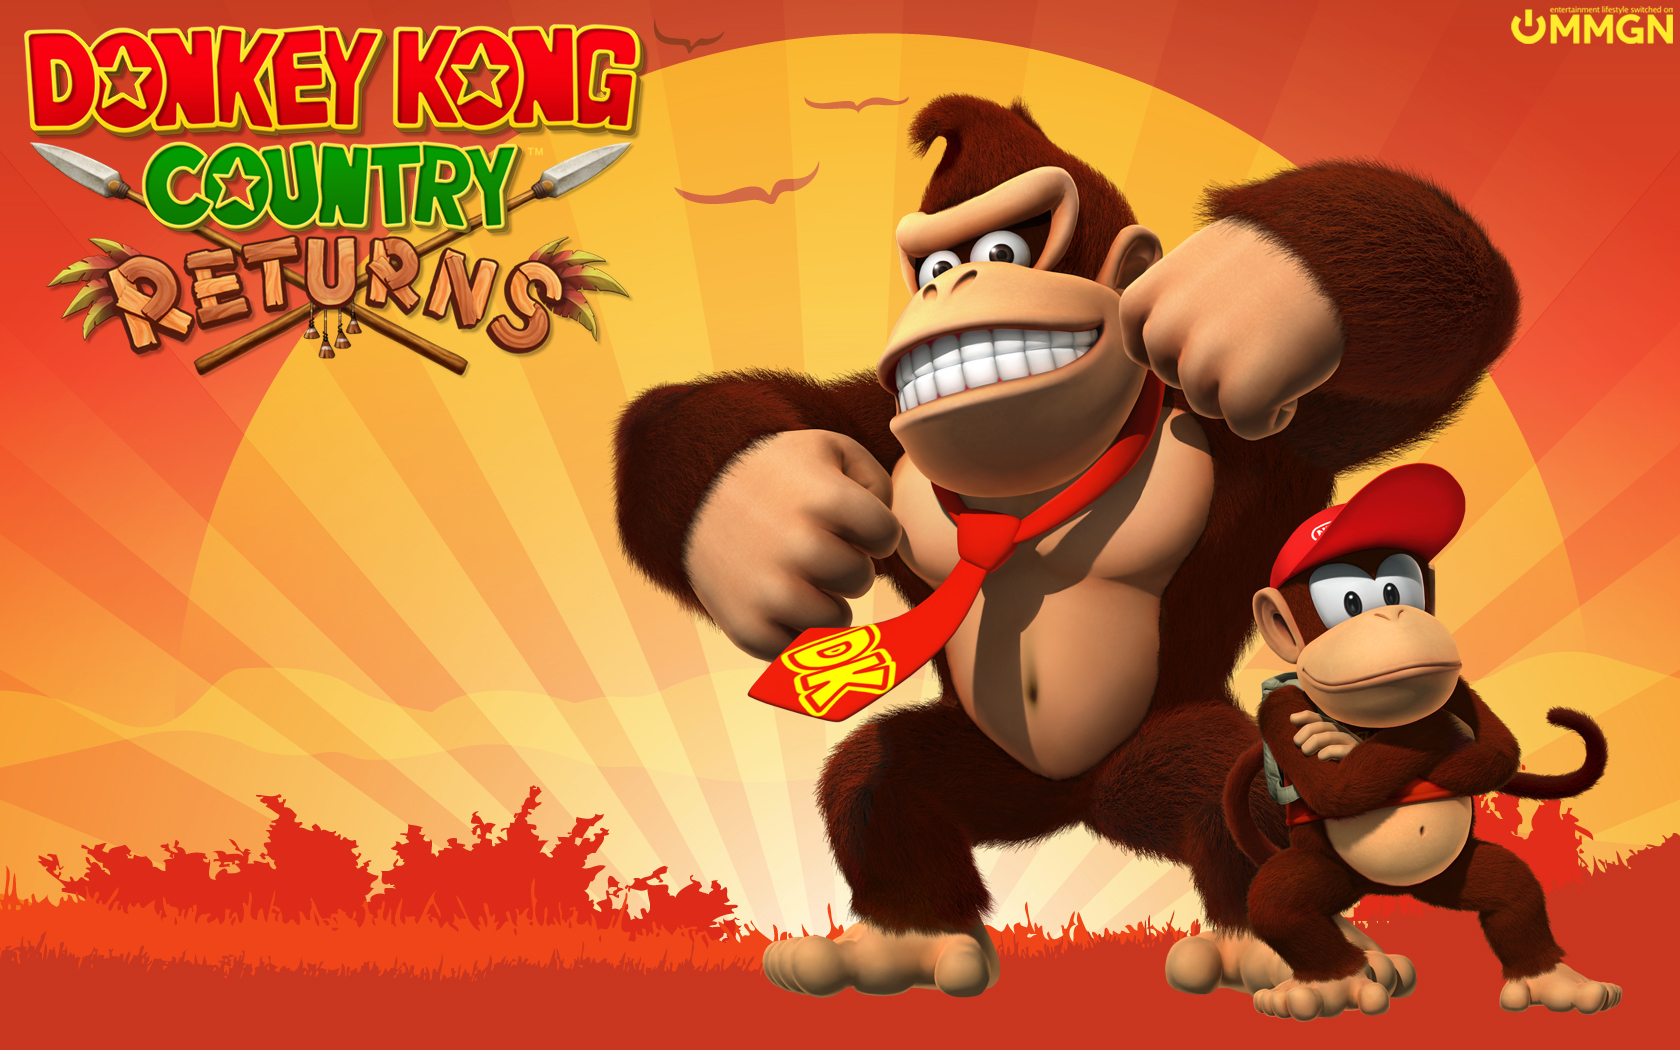 Donkey Kong Country Returns - Donkey Kong With Banana - HD Wallpaper 